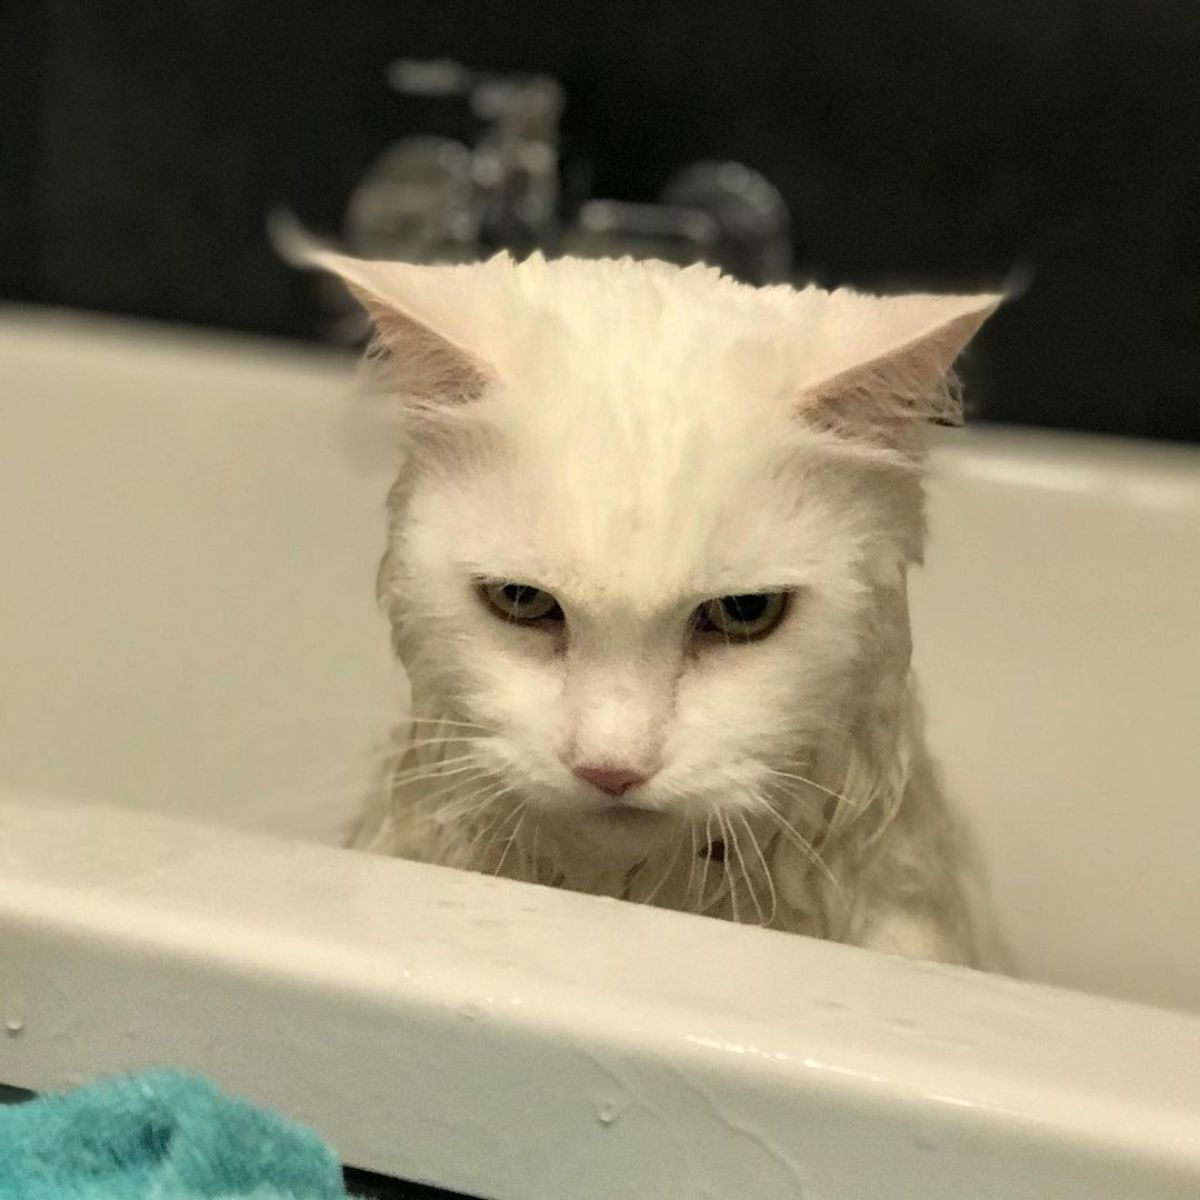 A white maine coon taking a bath.